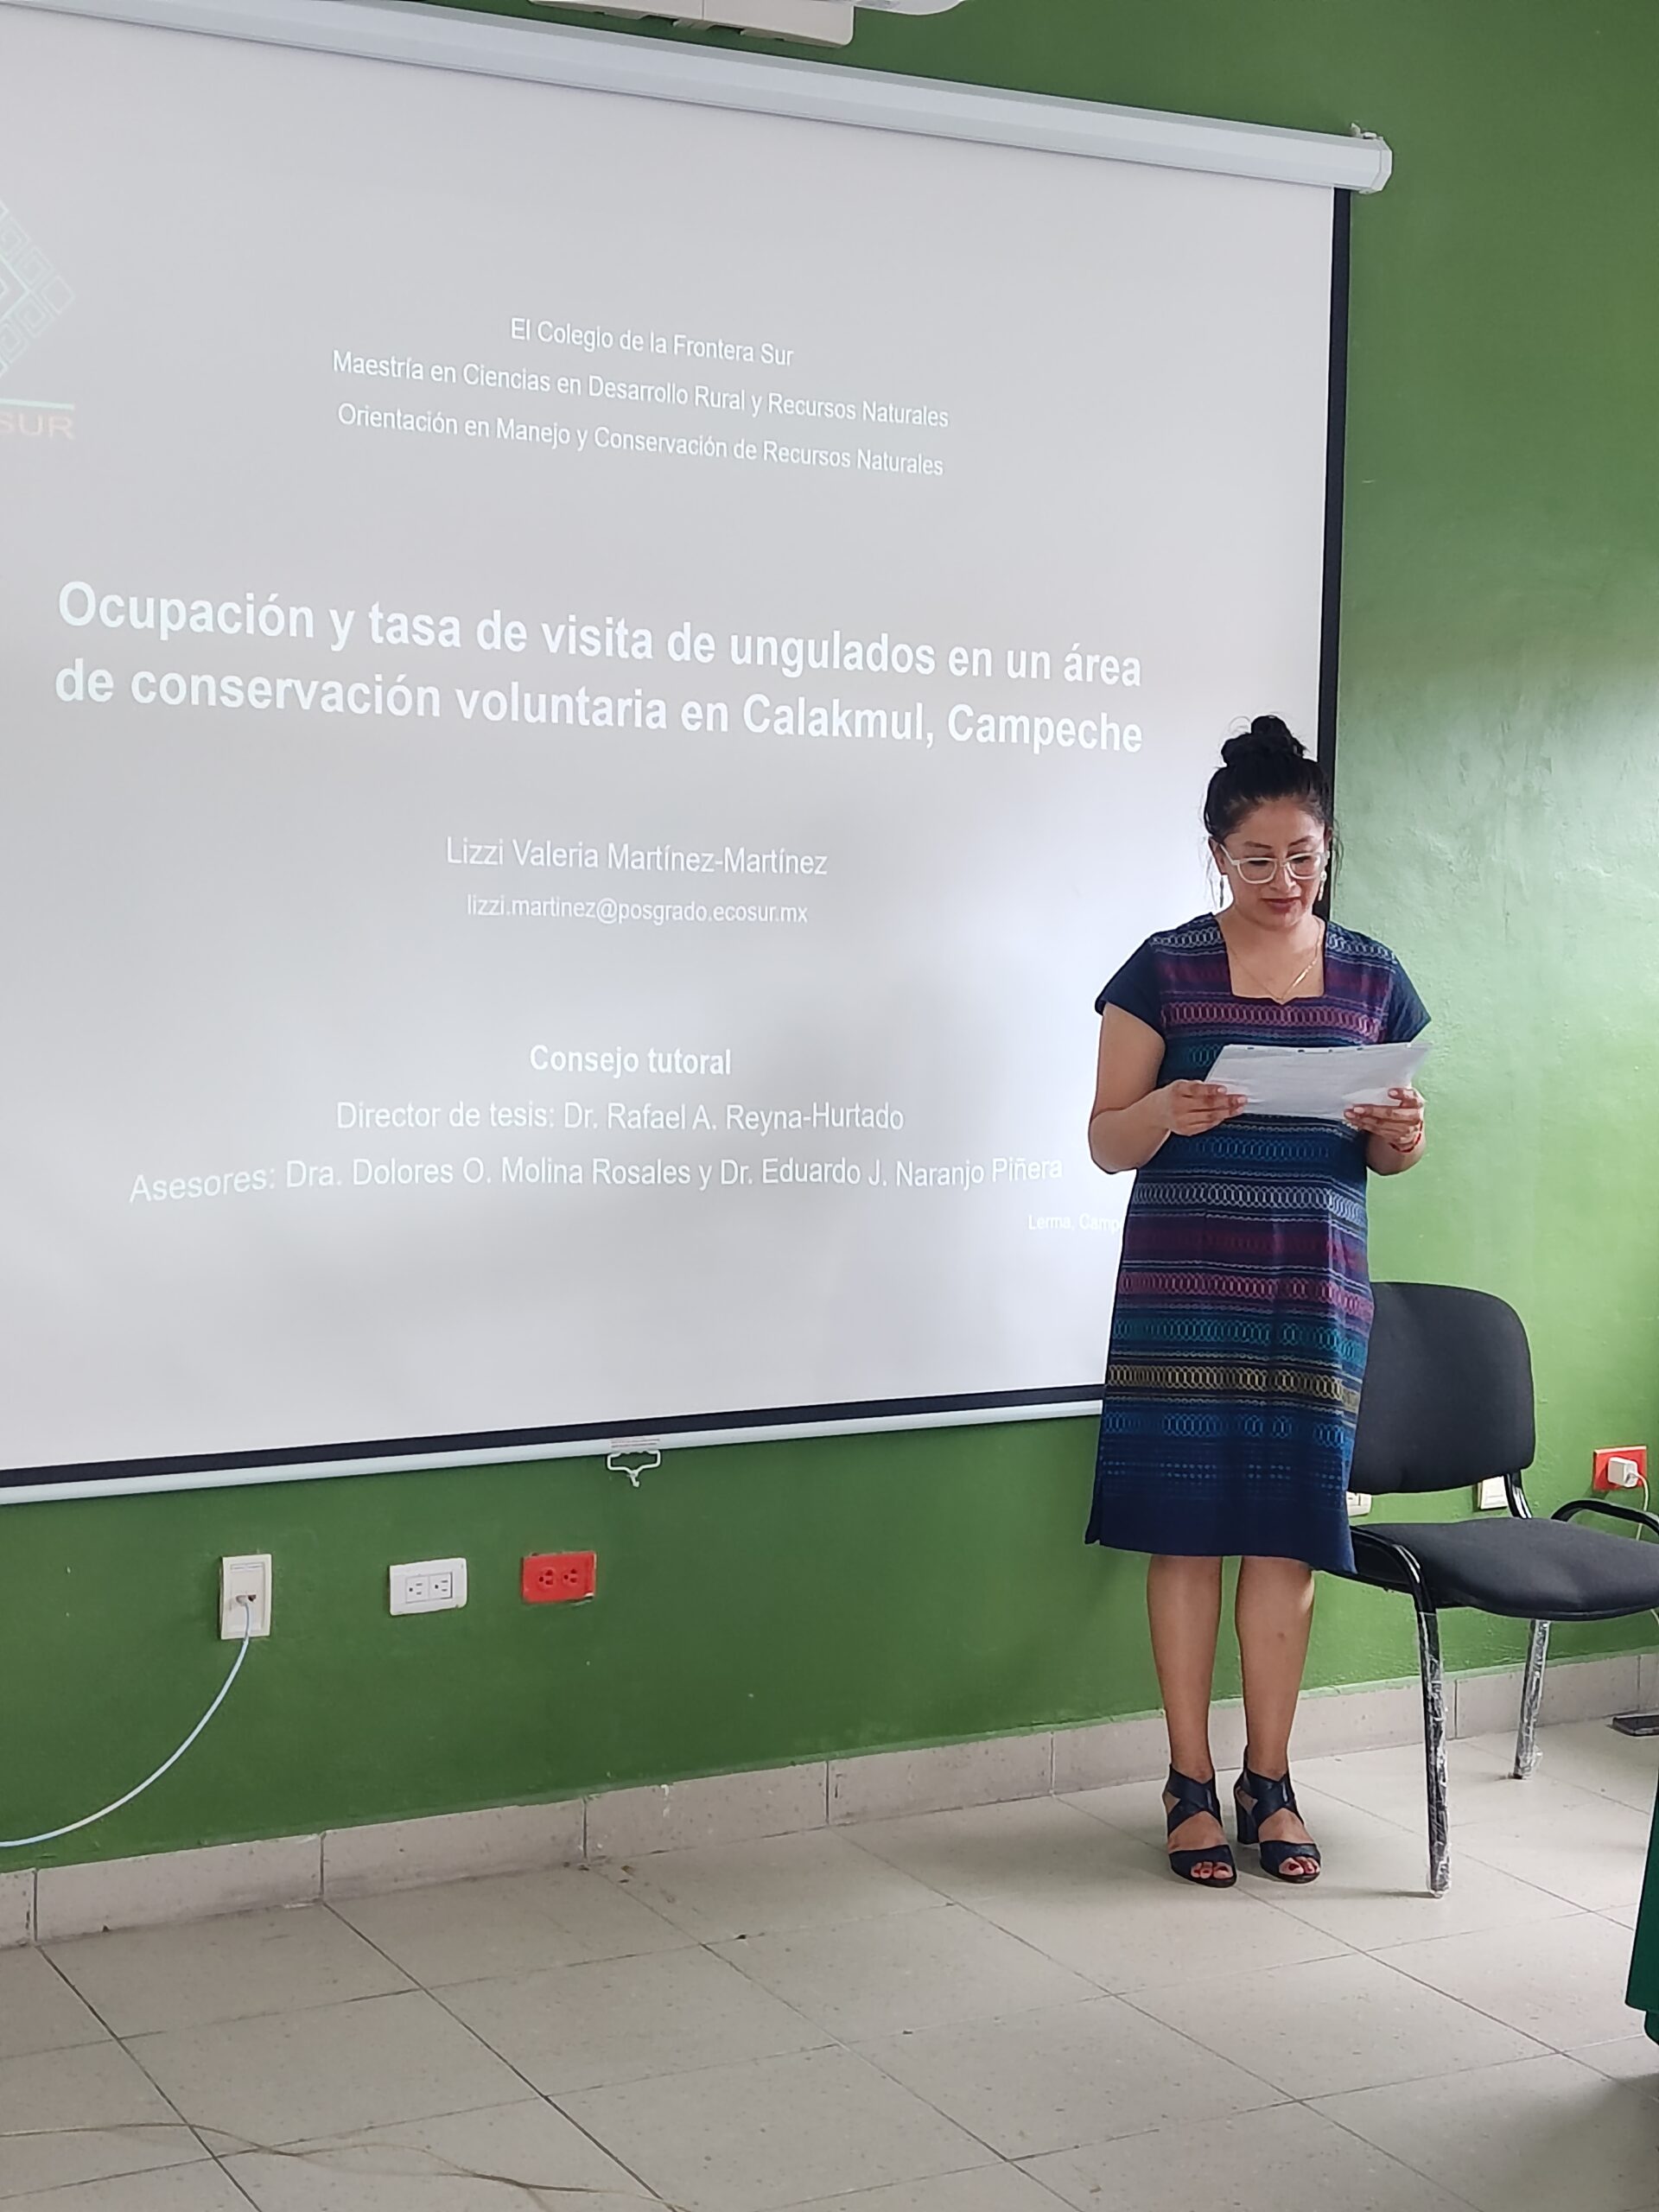 Lizzi Valeria Martínez Martínez obtiene grado de Maestra en Ciencias con la tesis “Ocupación y tasa de visita de ungulados en un área de conservación voluntaria en Calakmul, Campeche”.